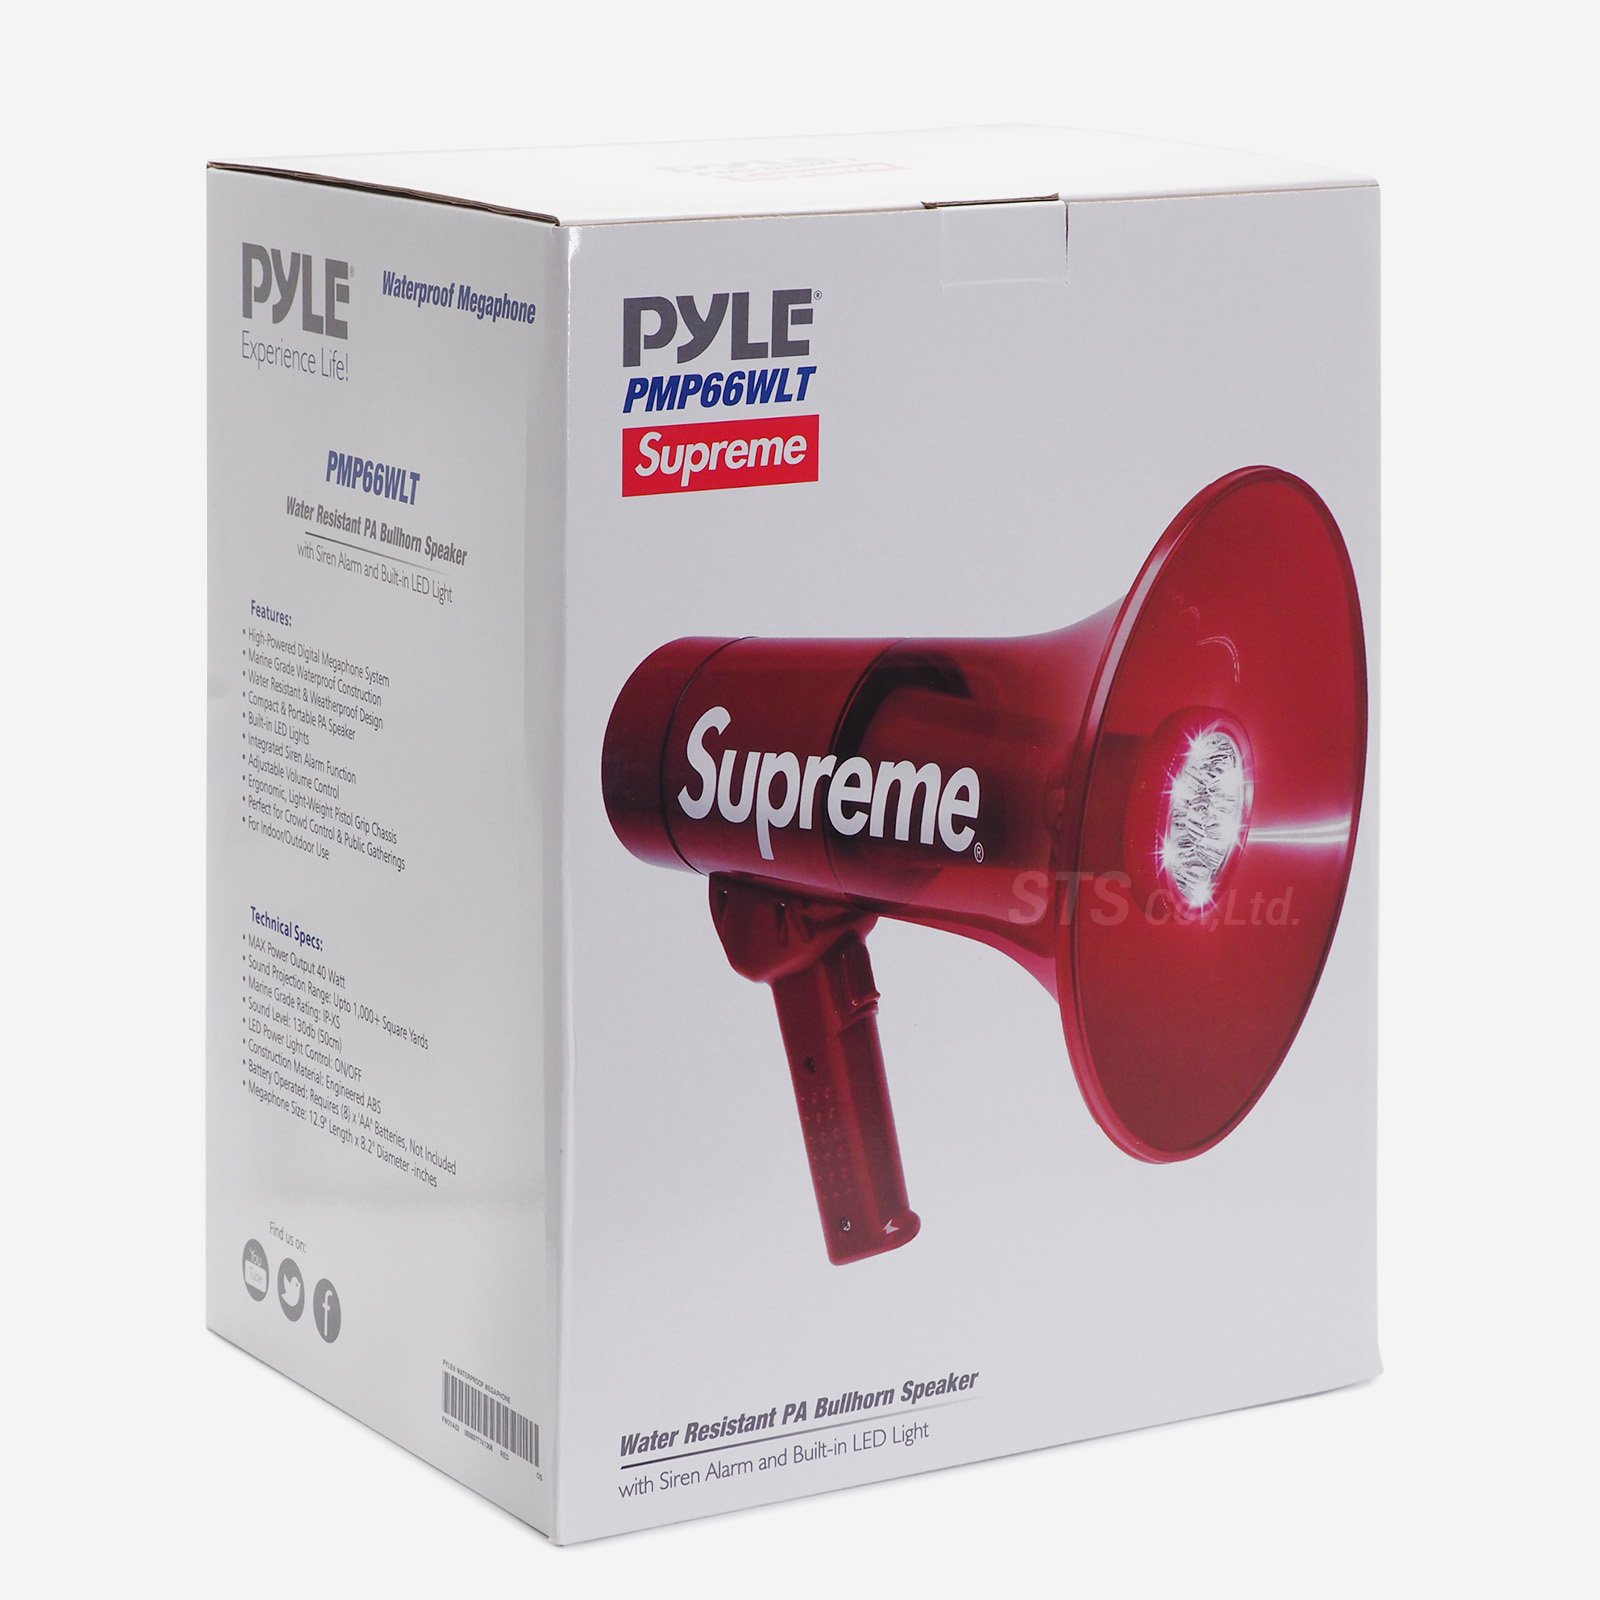 Pyle® Waterproof Megaphone "Red"